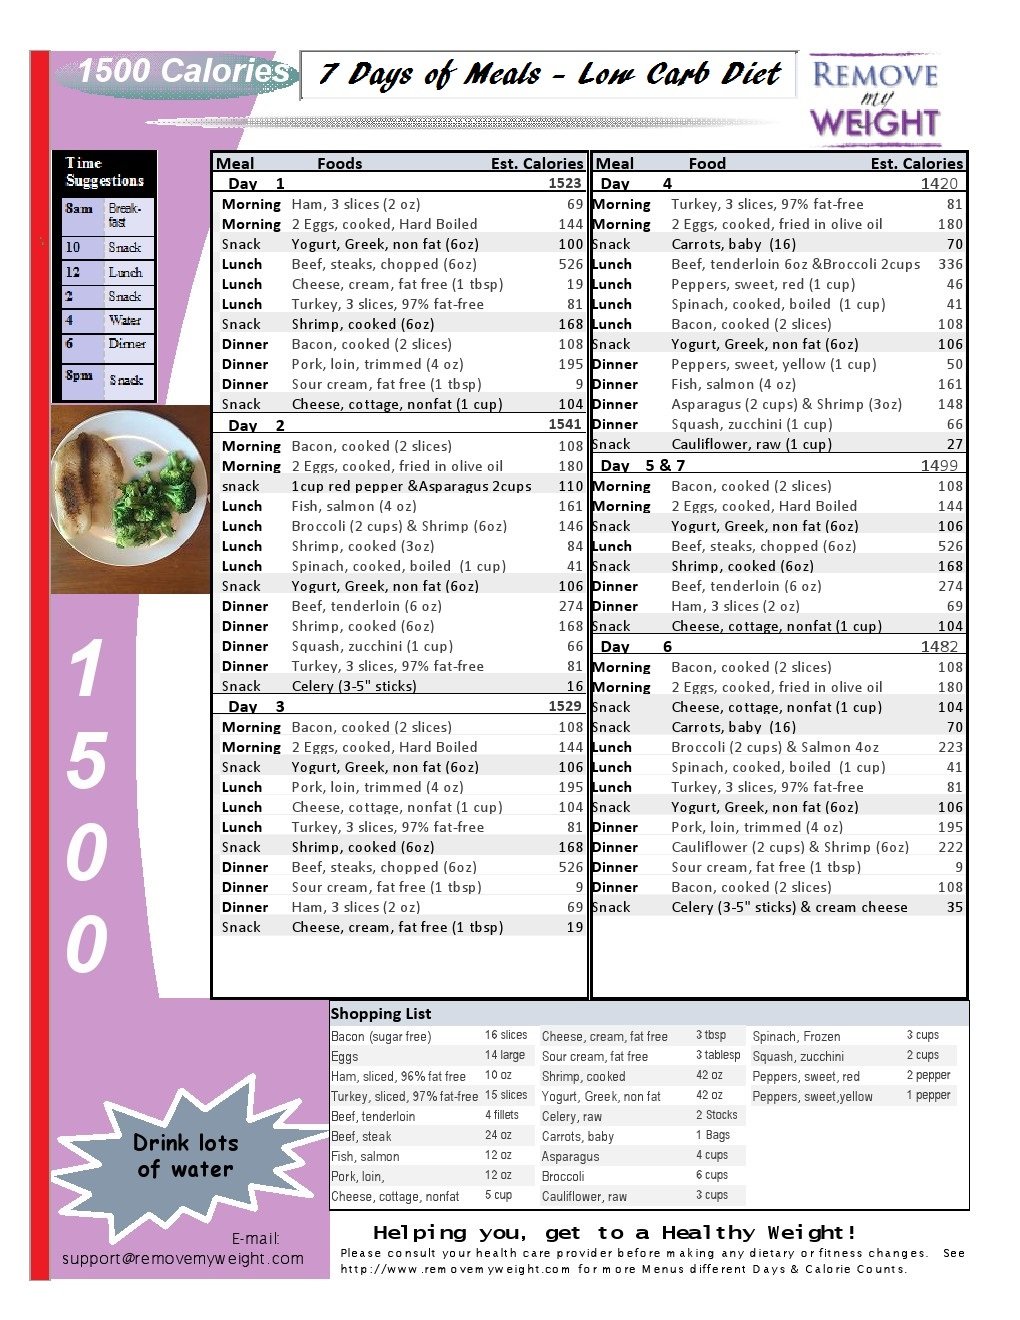 Printable Low Carb Diet: 1 Week -1500 Calorie Menu Plan ...